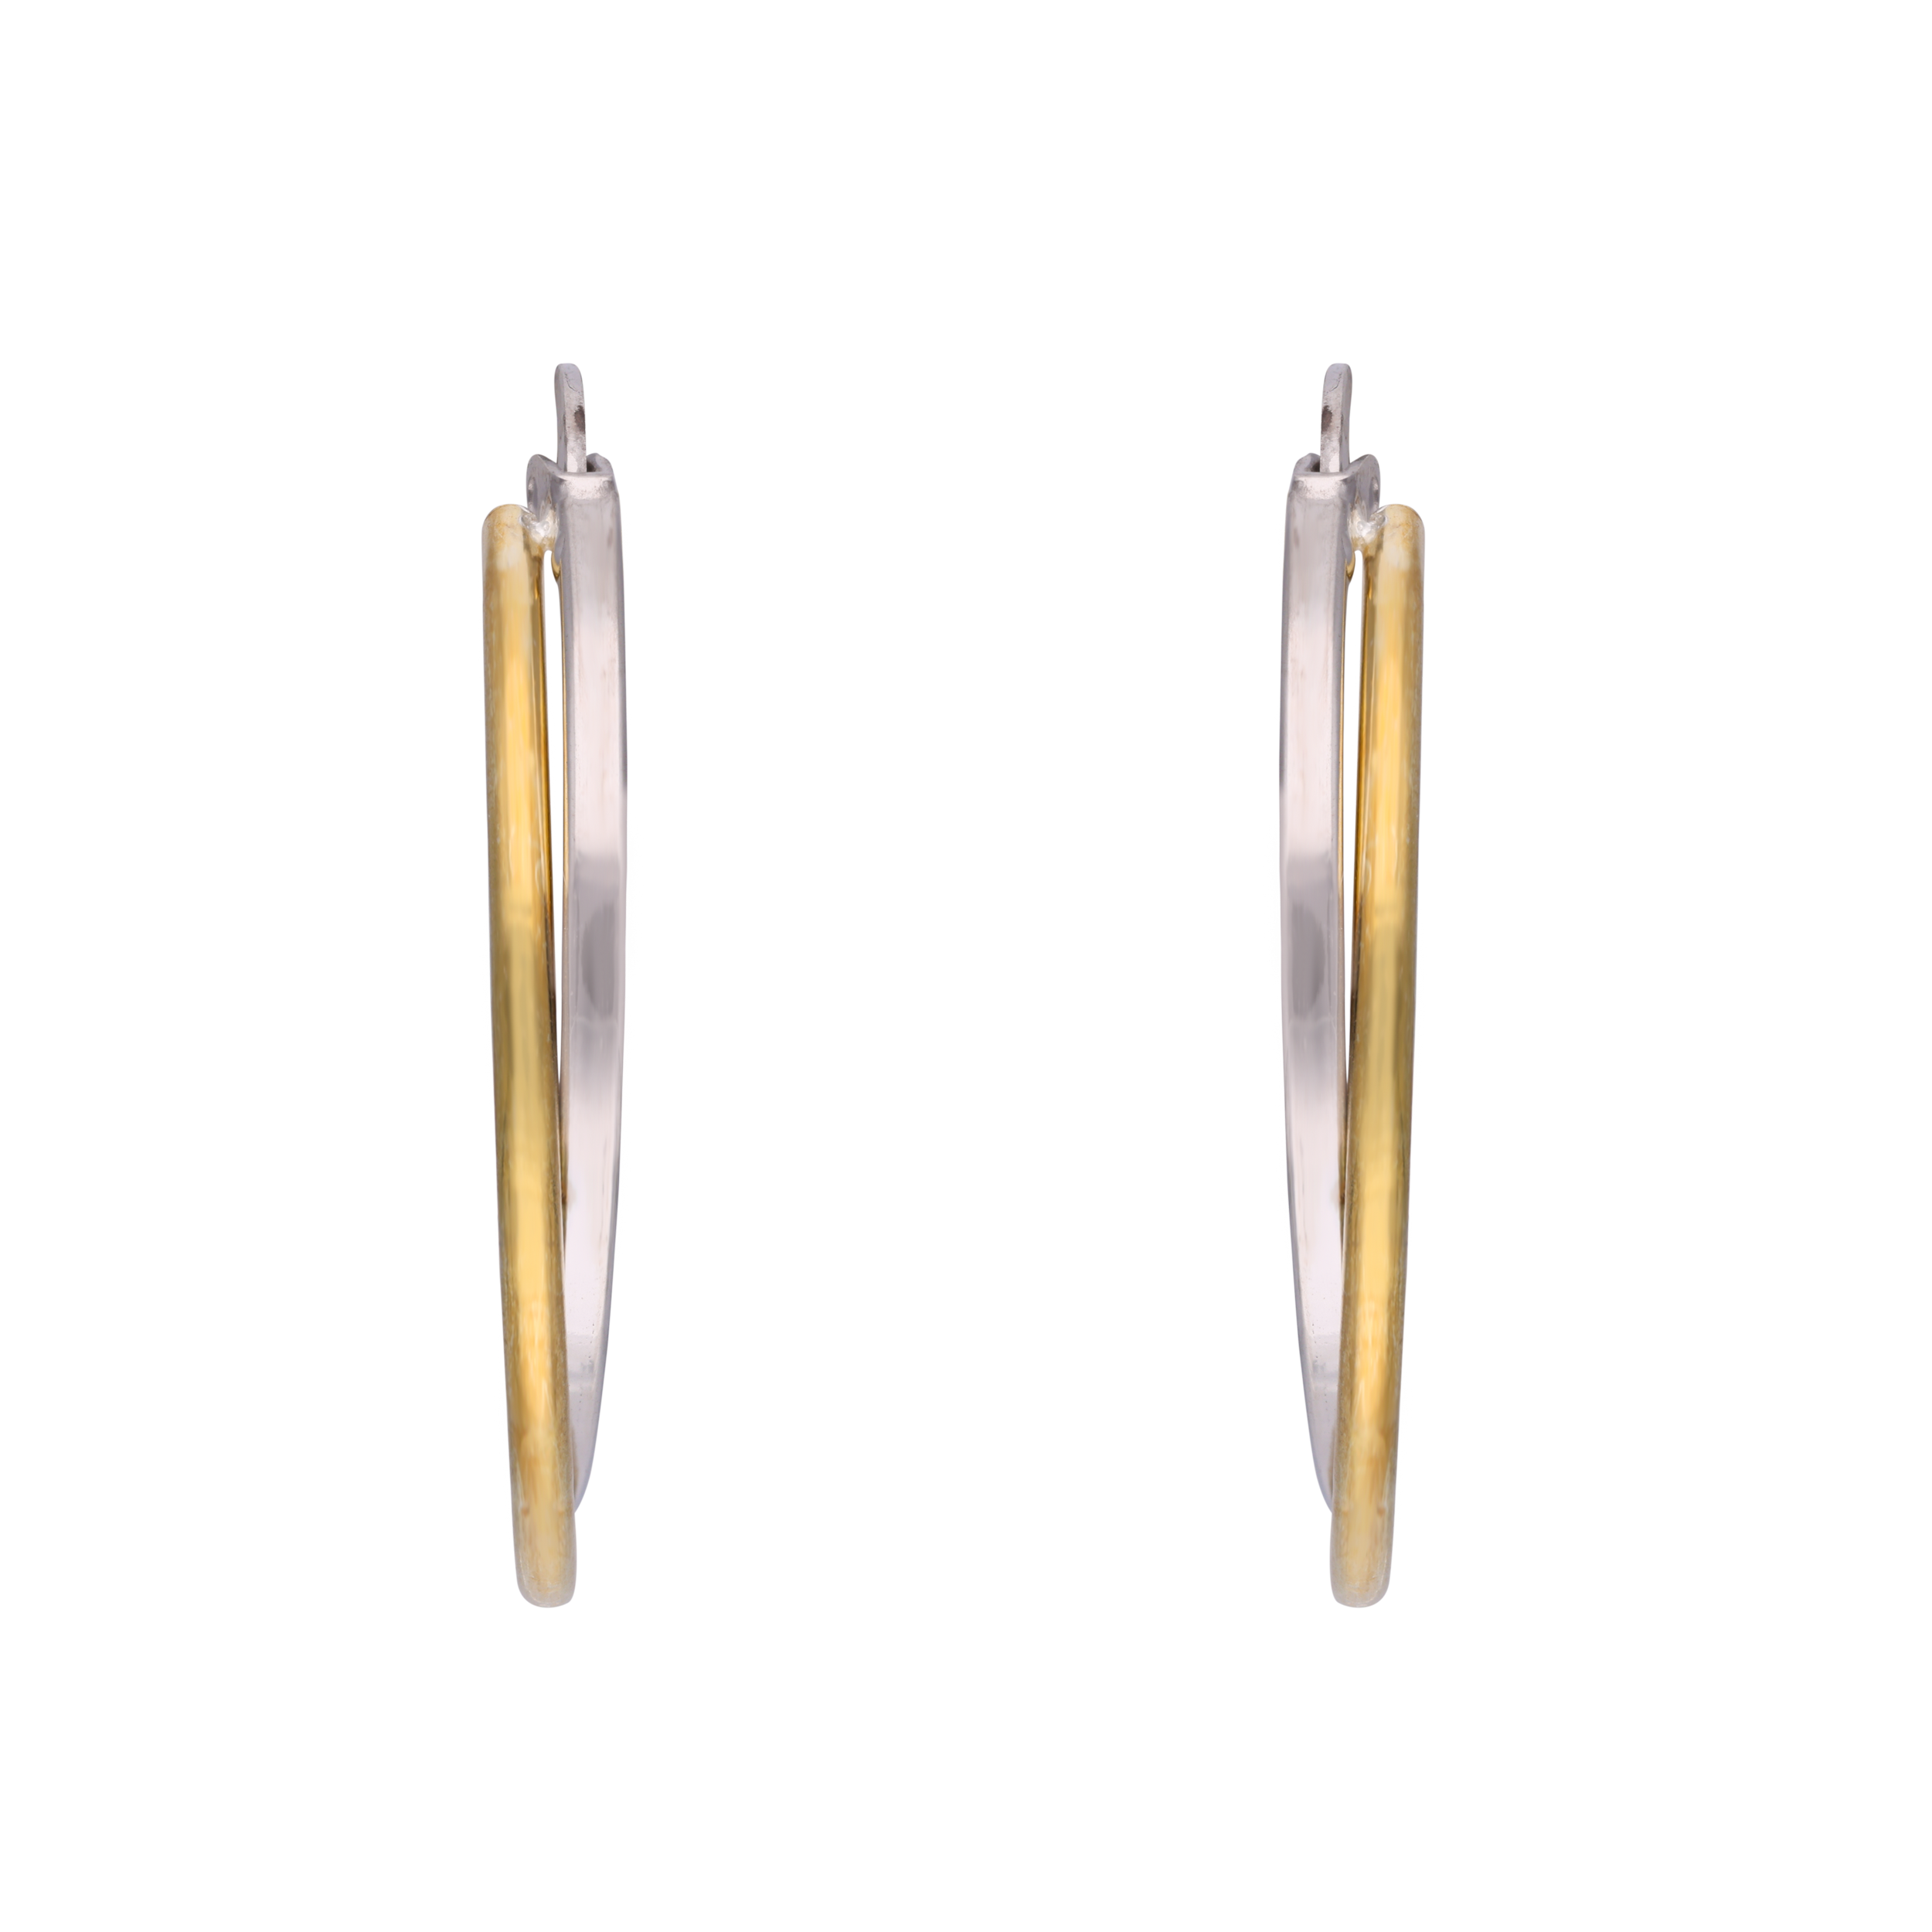 Sterling Silver Duo-Tone Hoop Earrings | SKU : 0002930138, 0002930169, 0002930152, 0002930121, 0002930176, 0002930114